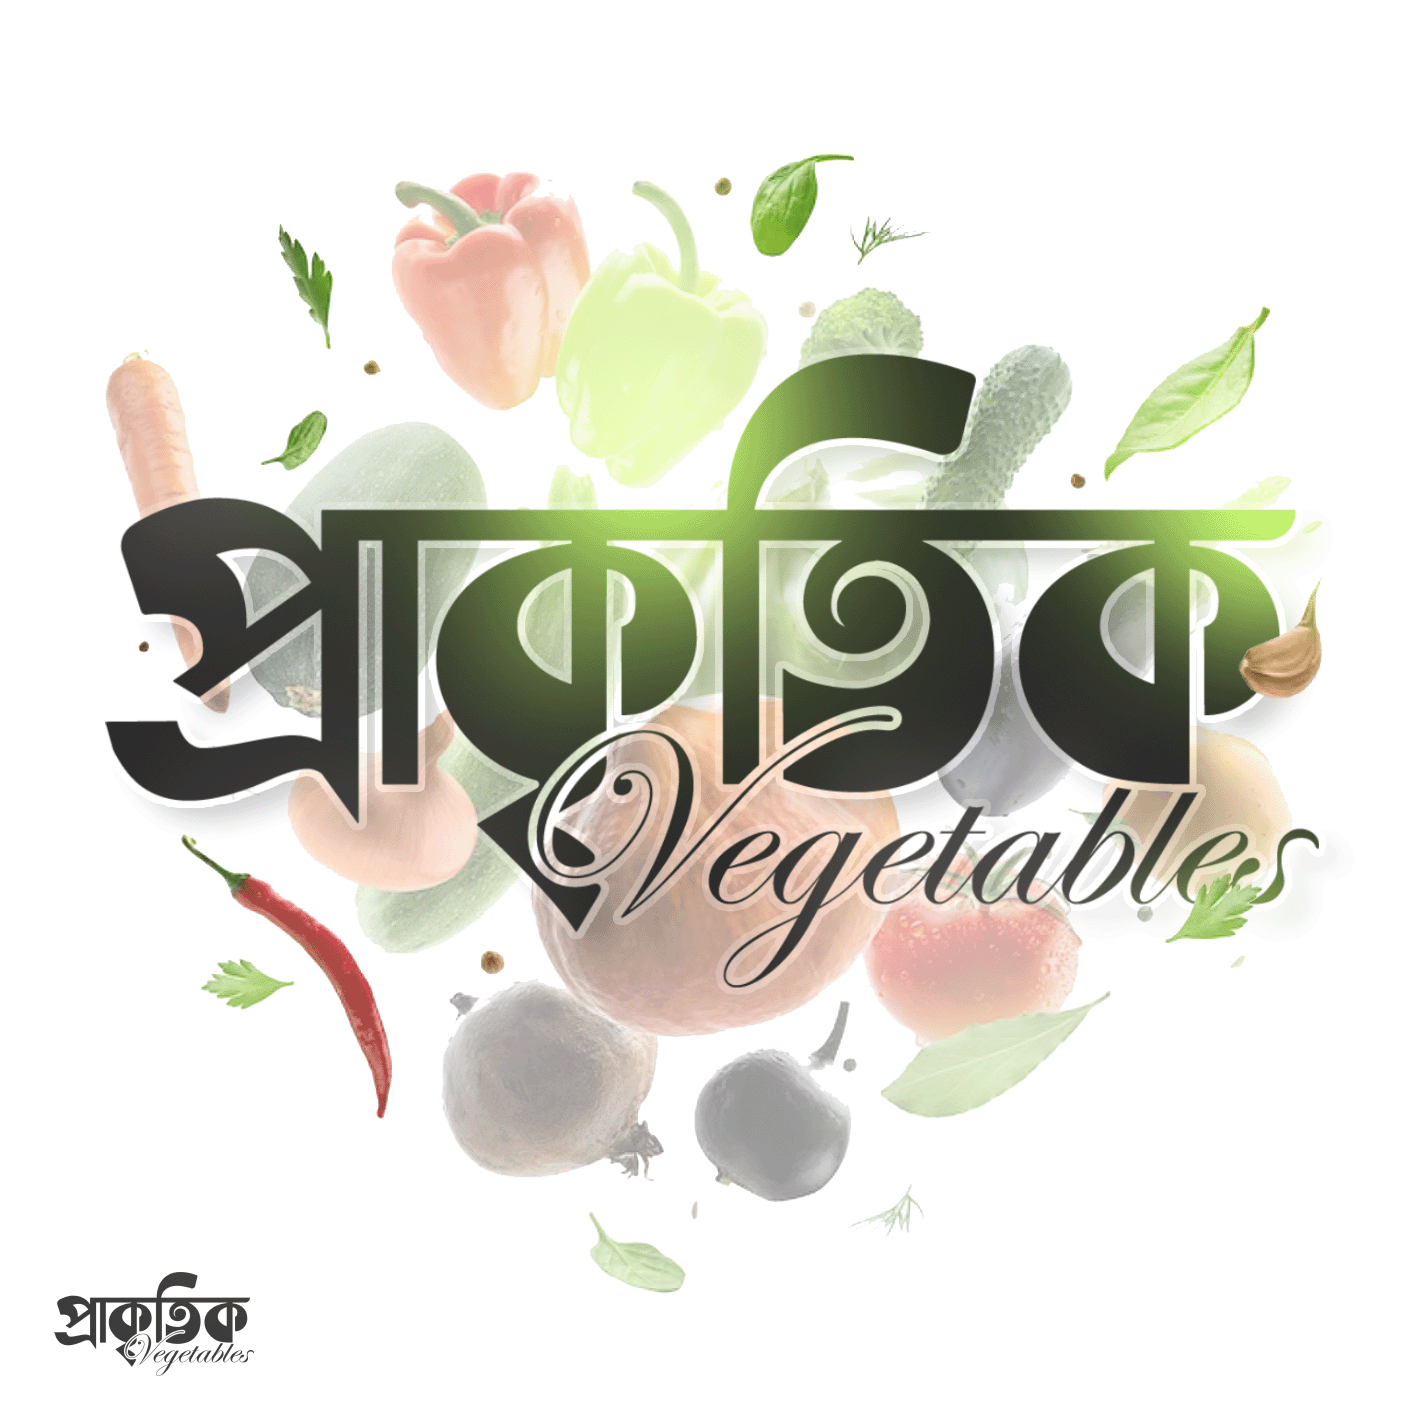 প্রাকৃতিক vegetables bangla logo bangla bangla food logo bangla lettering bangla logo bangla logotype bangla typography food logo logo development logotype natural vegan logo vegetables প্রাকৃতিক